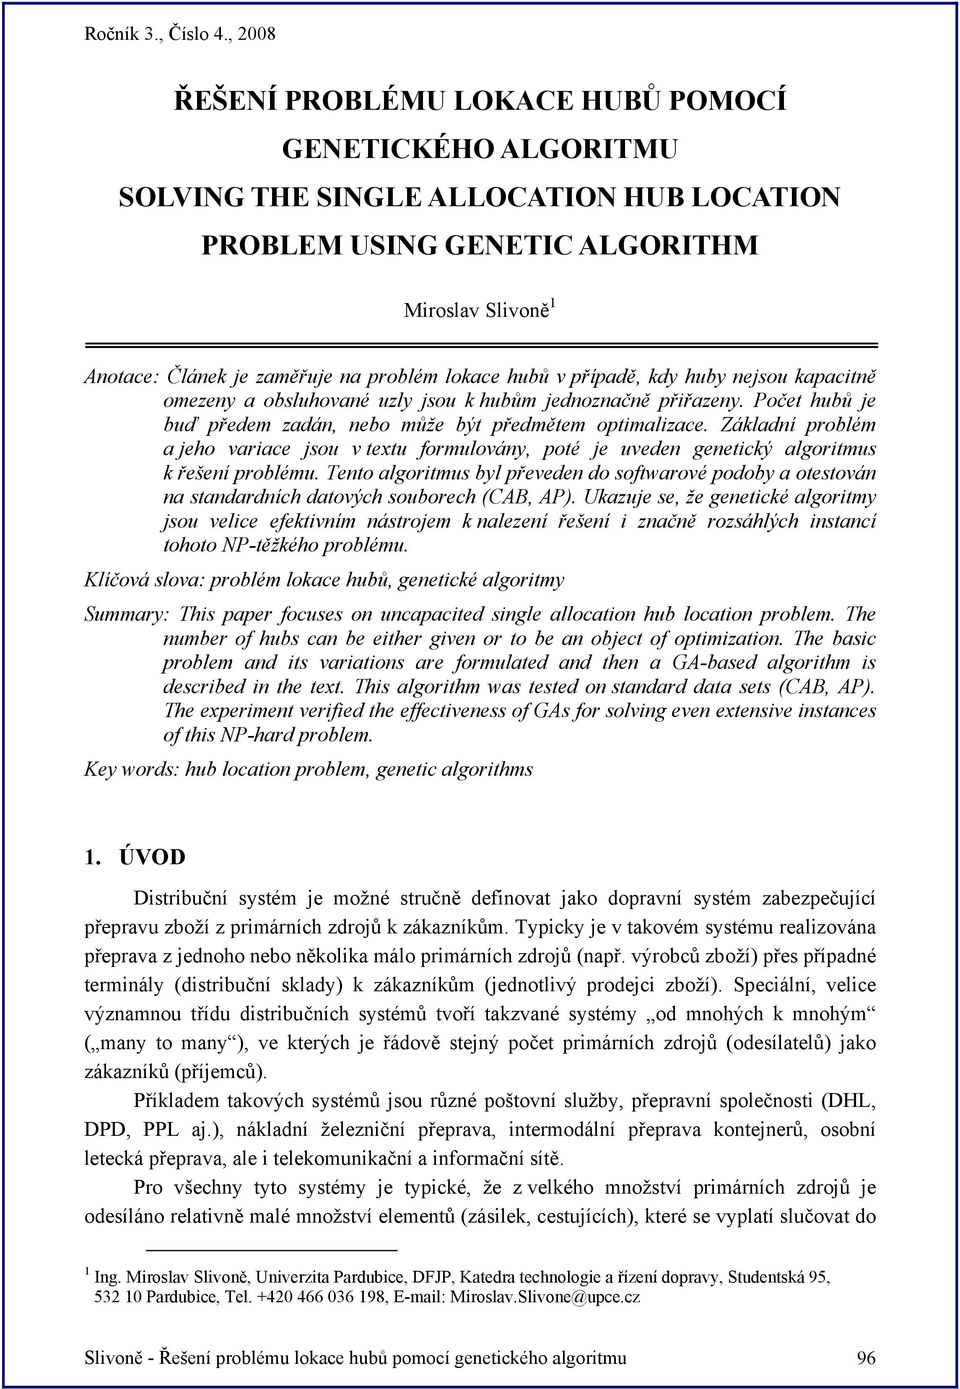 Základní problém a jeho variace jsou v textu formulovány, poté je uveden genetický algoritmus k řešení problému.